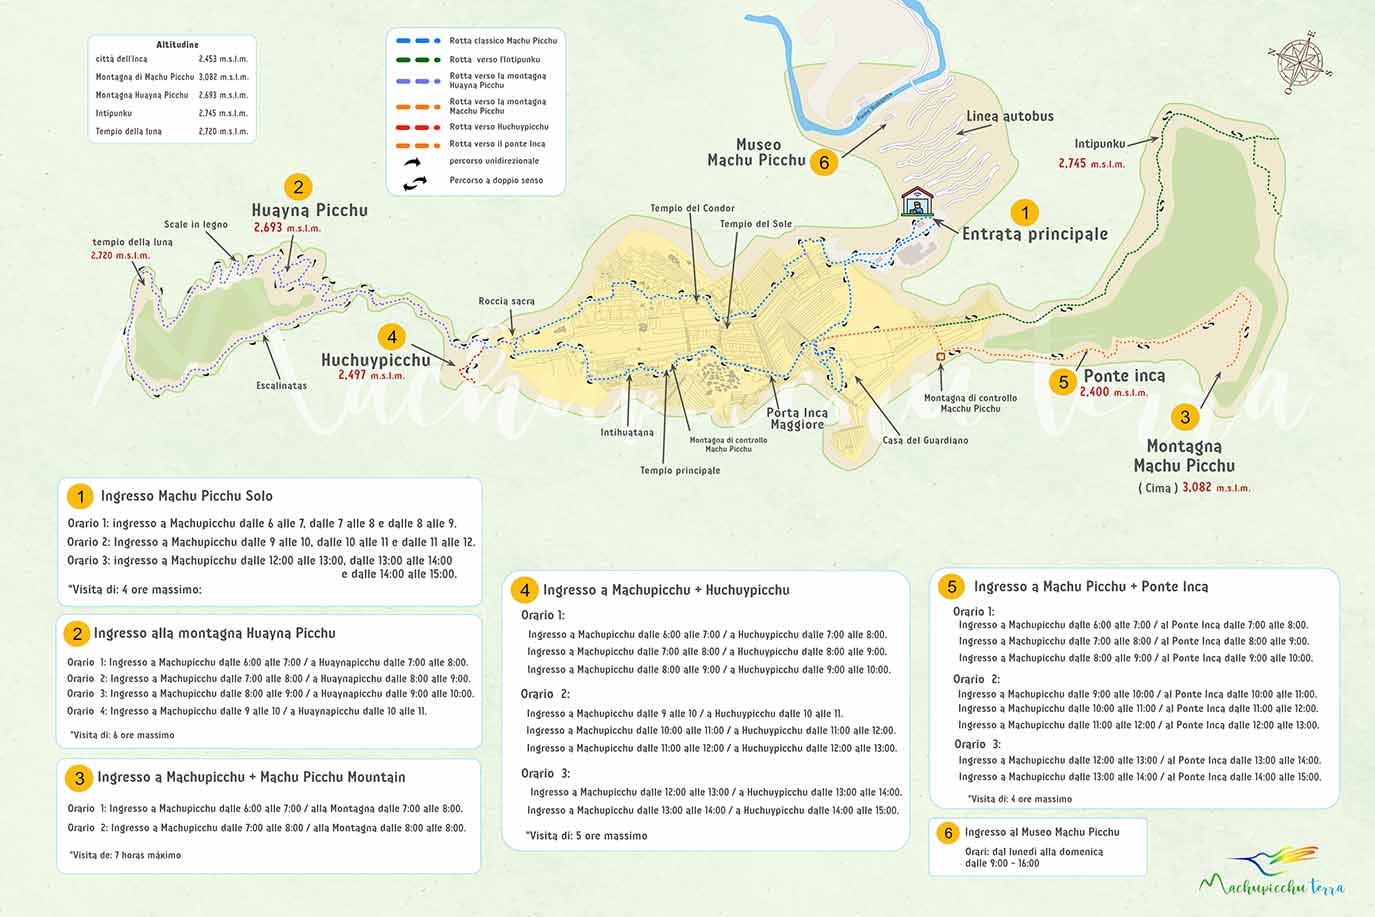 Mappa del tour di Machu Picchu